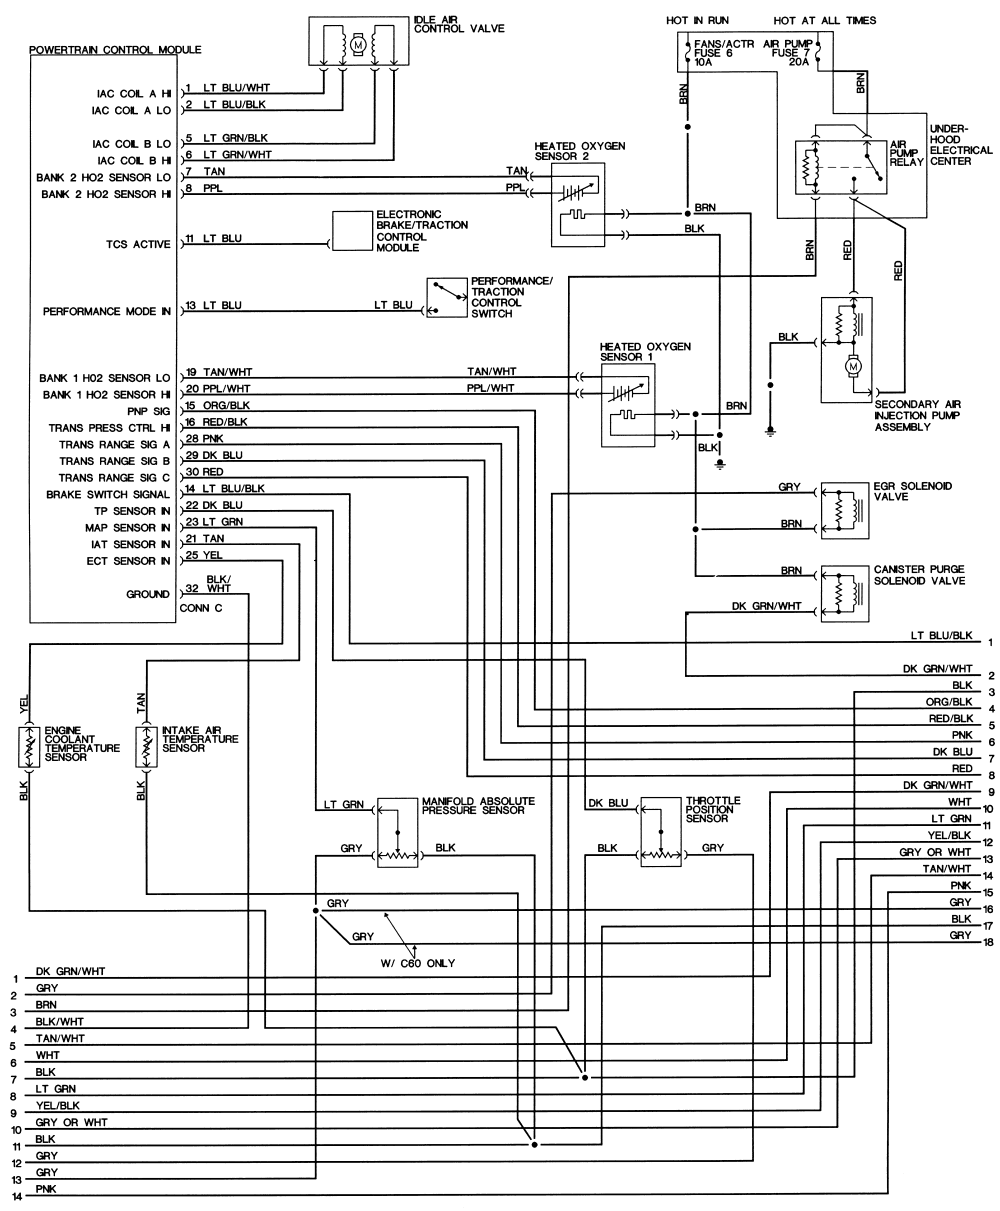 Wiring Diagram For 1995 Firebird - Complete Wiring Schemas